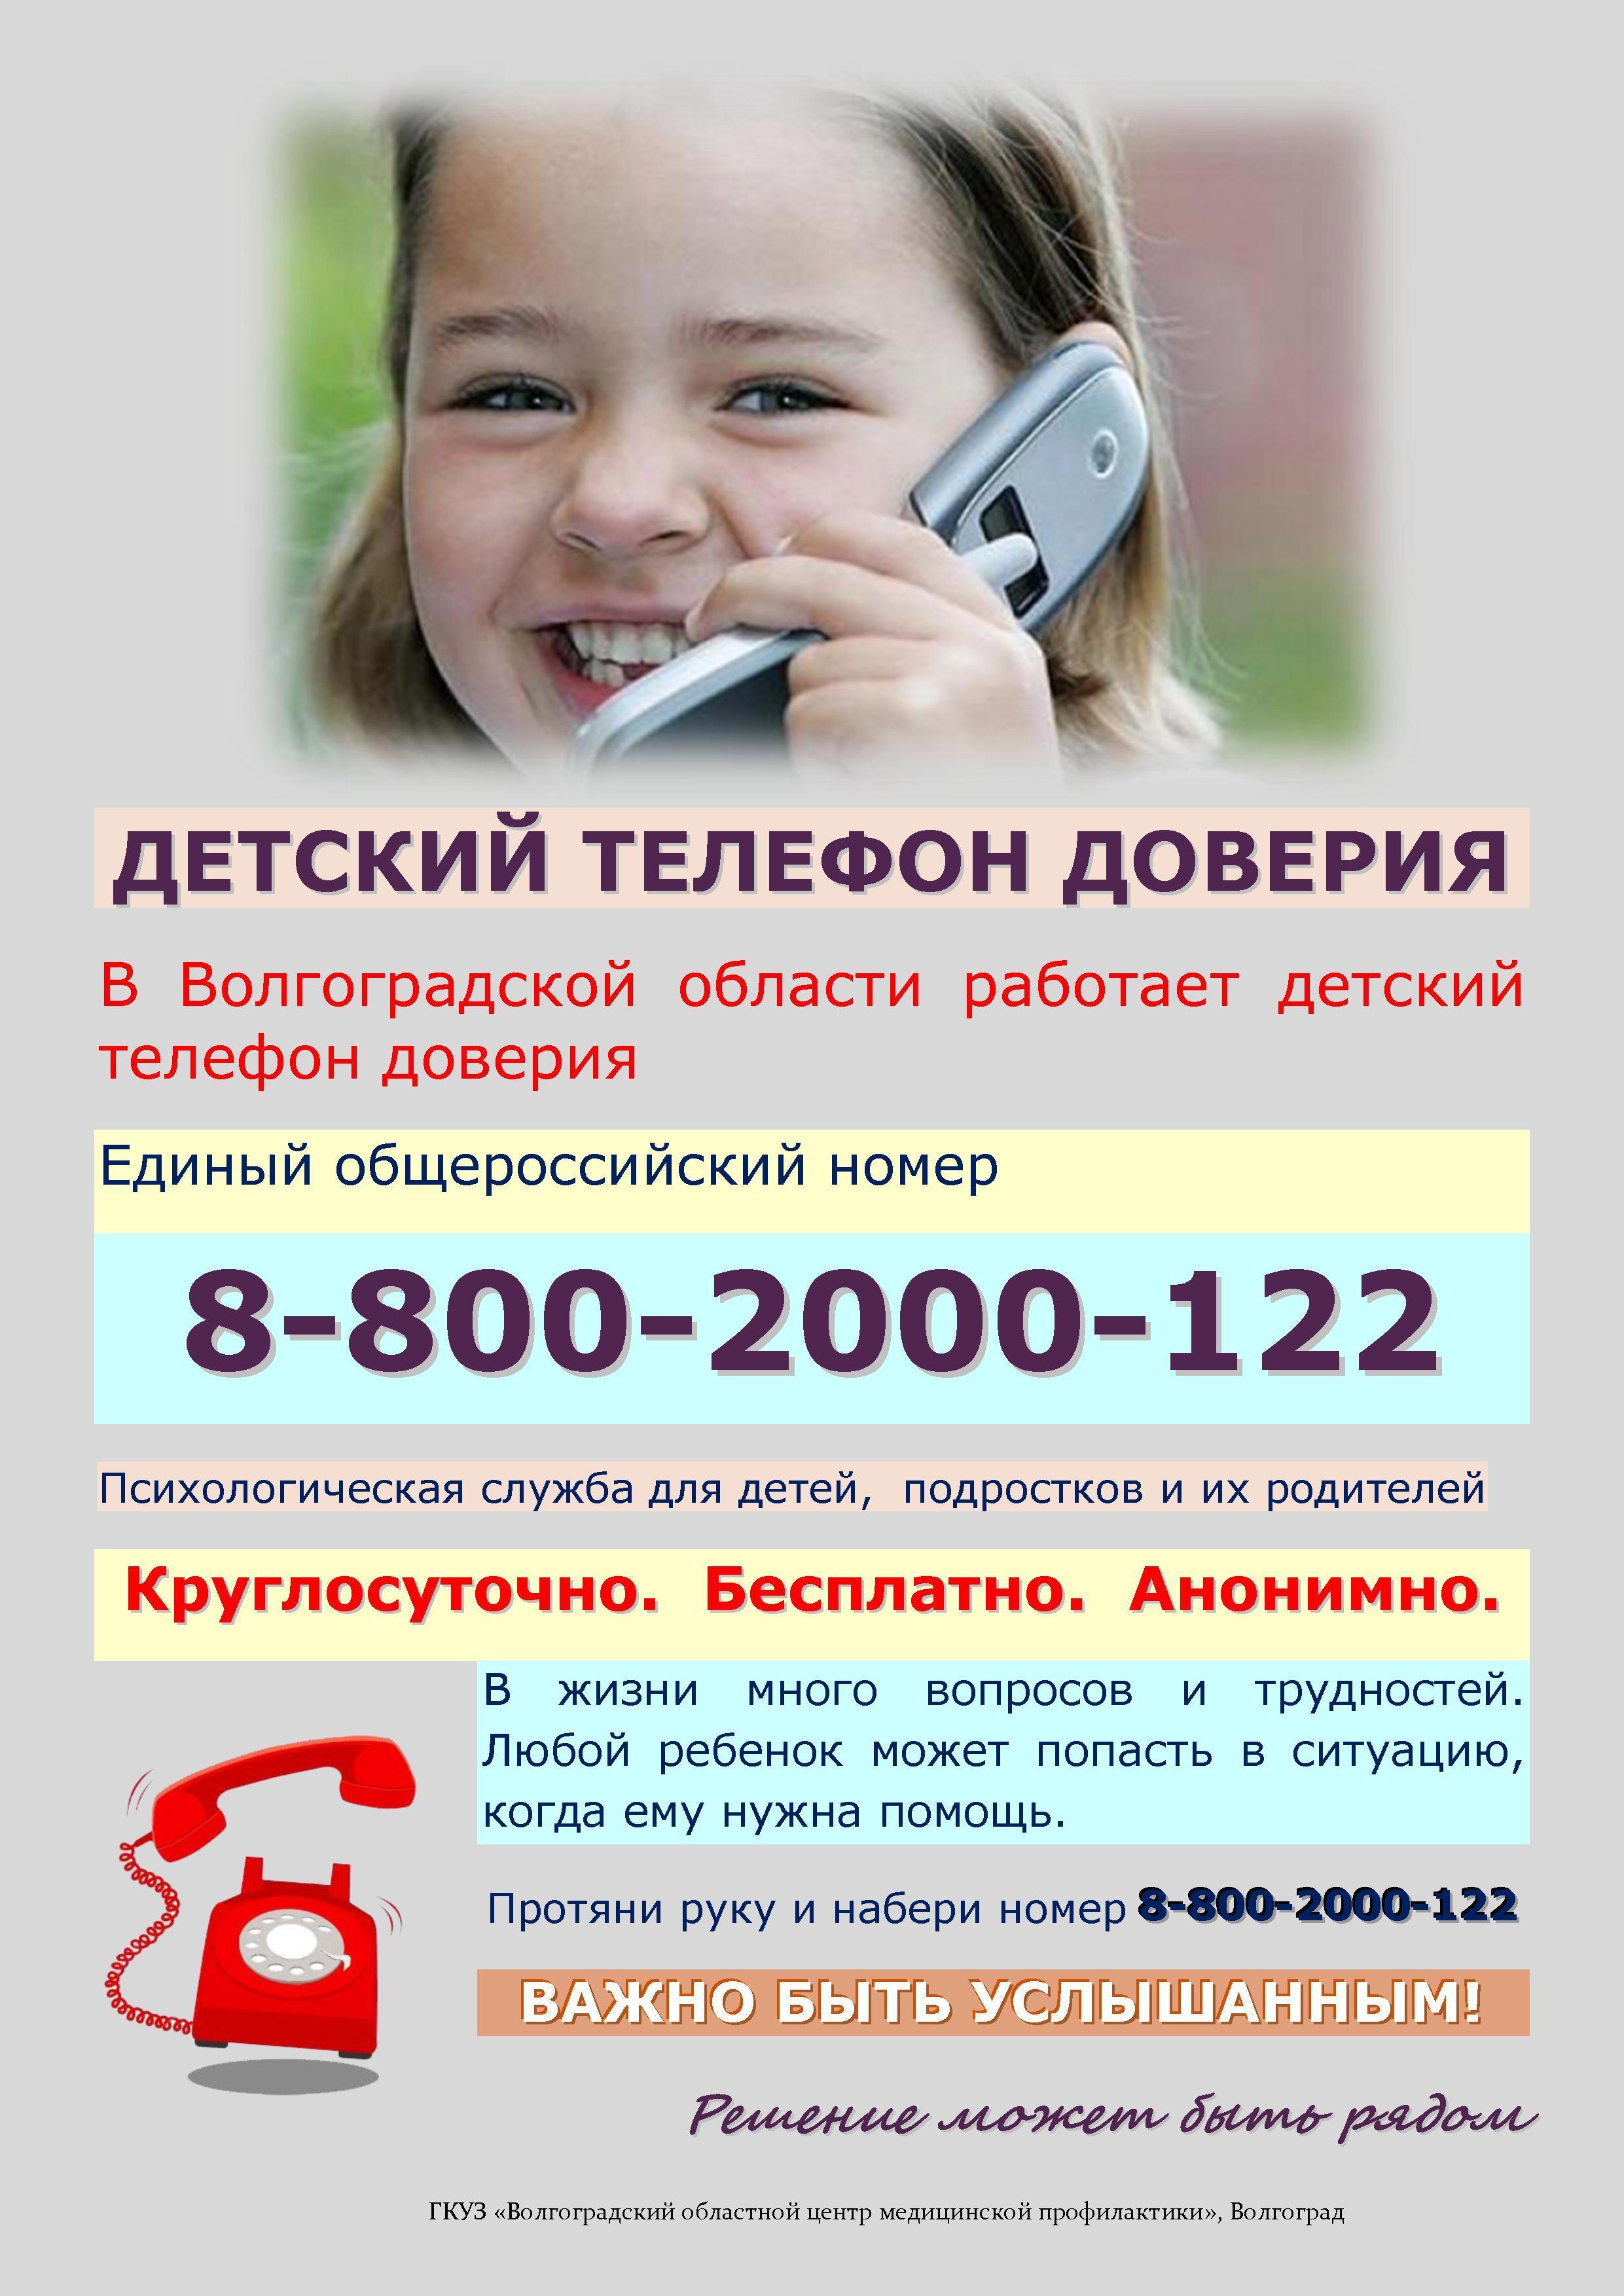 Телефон доверия управления. Телефон доверия. Детский телефон доверия. Телефон доверия для детей подростков и их родителей. Номер телефона доверия для детей.